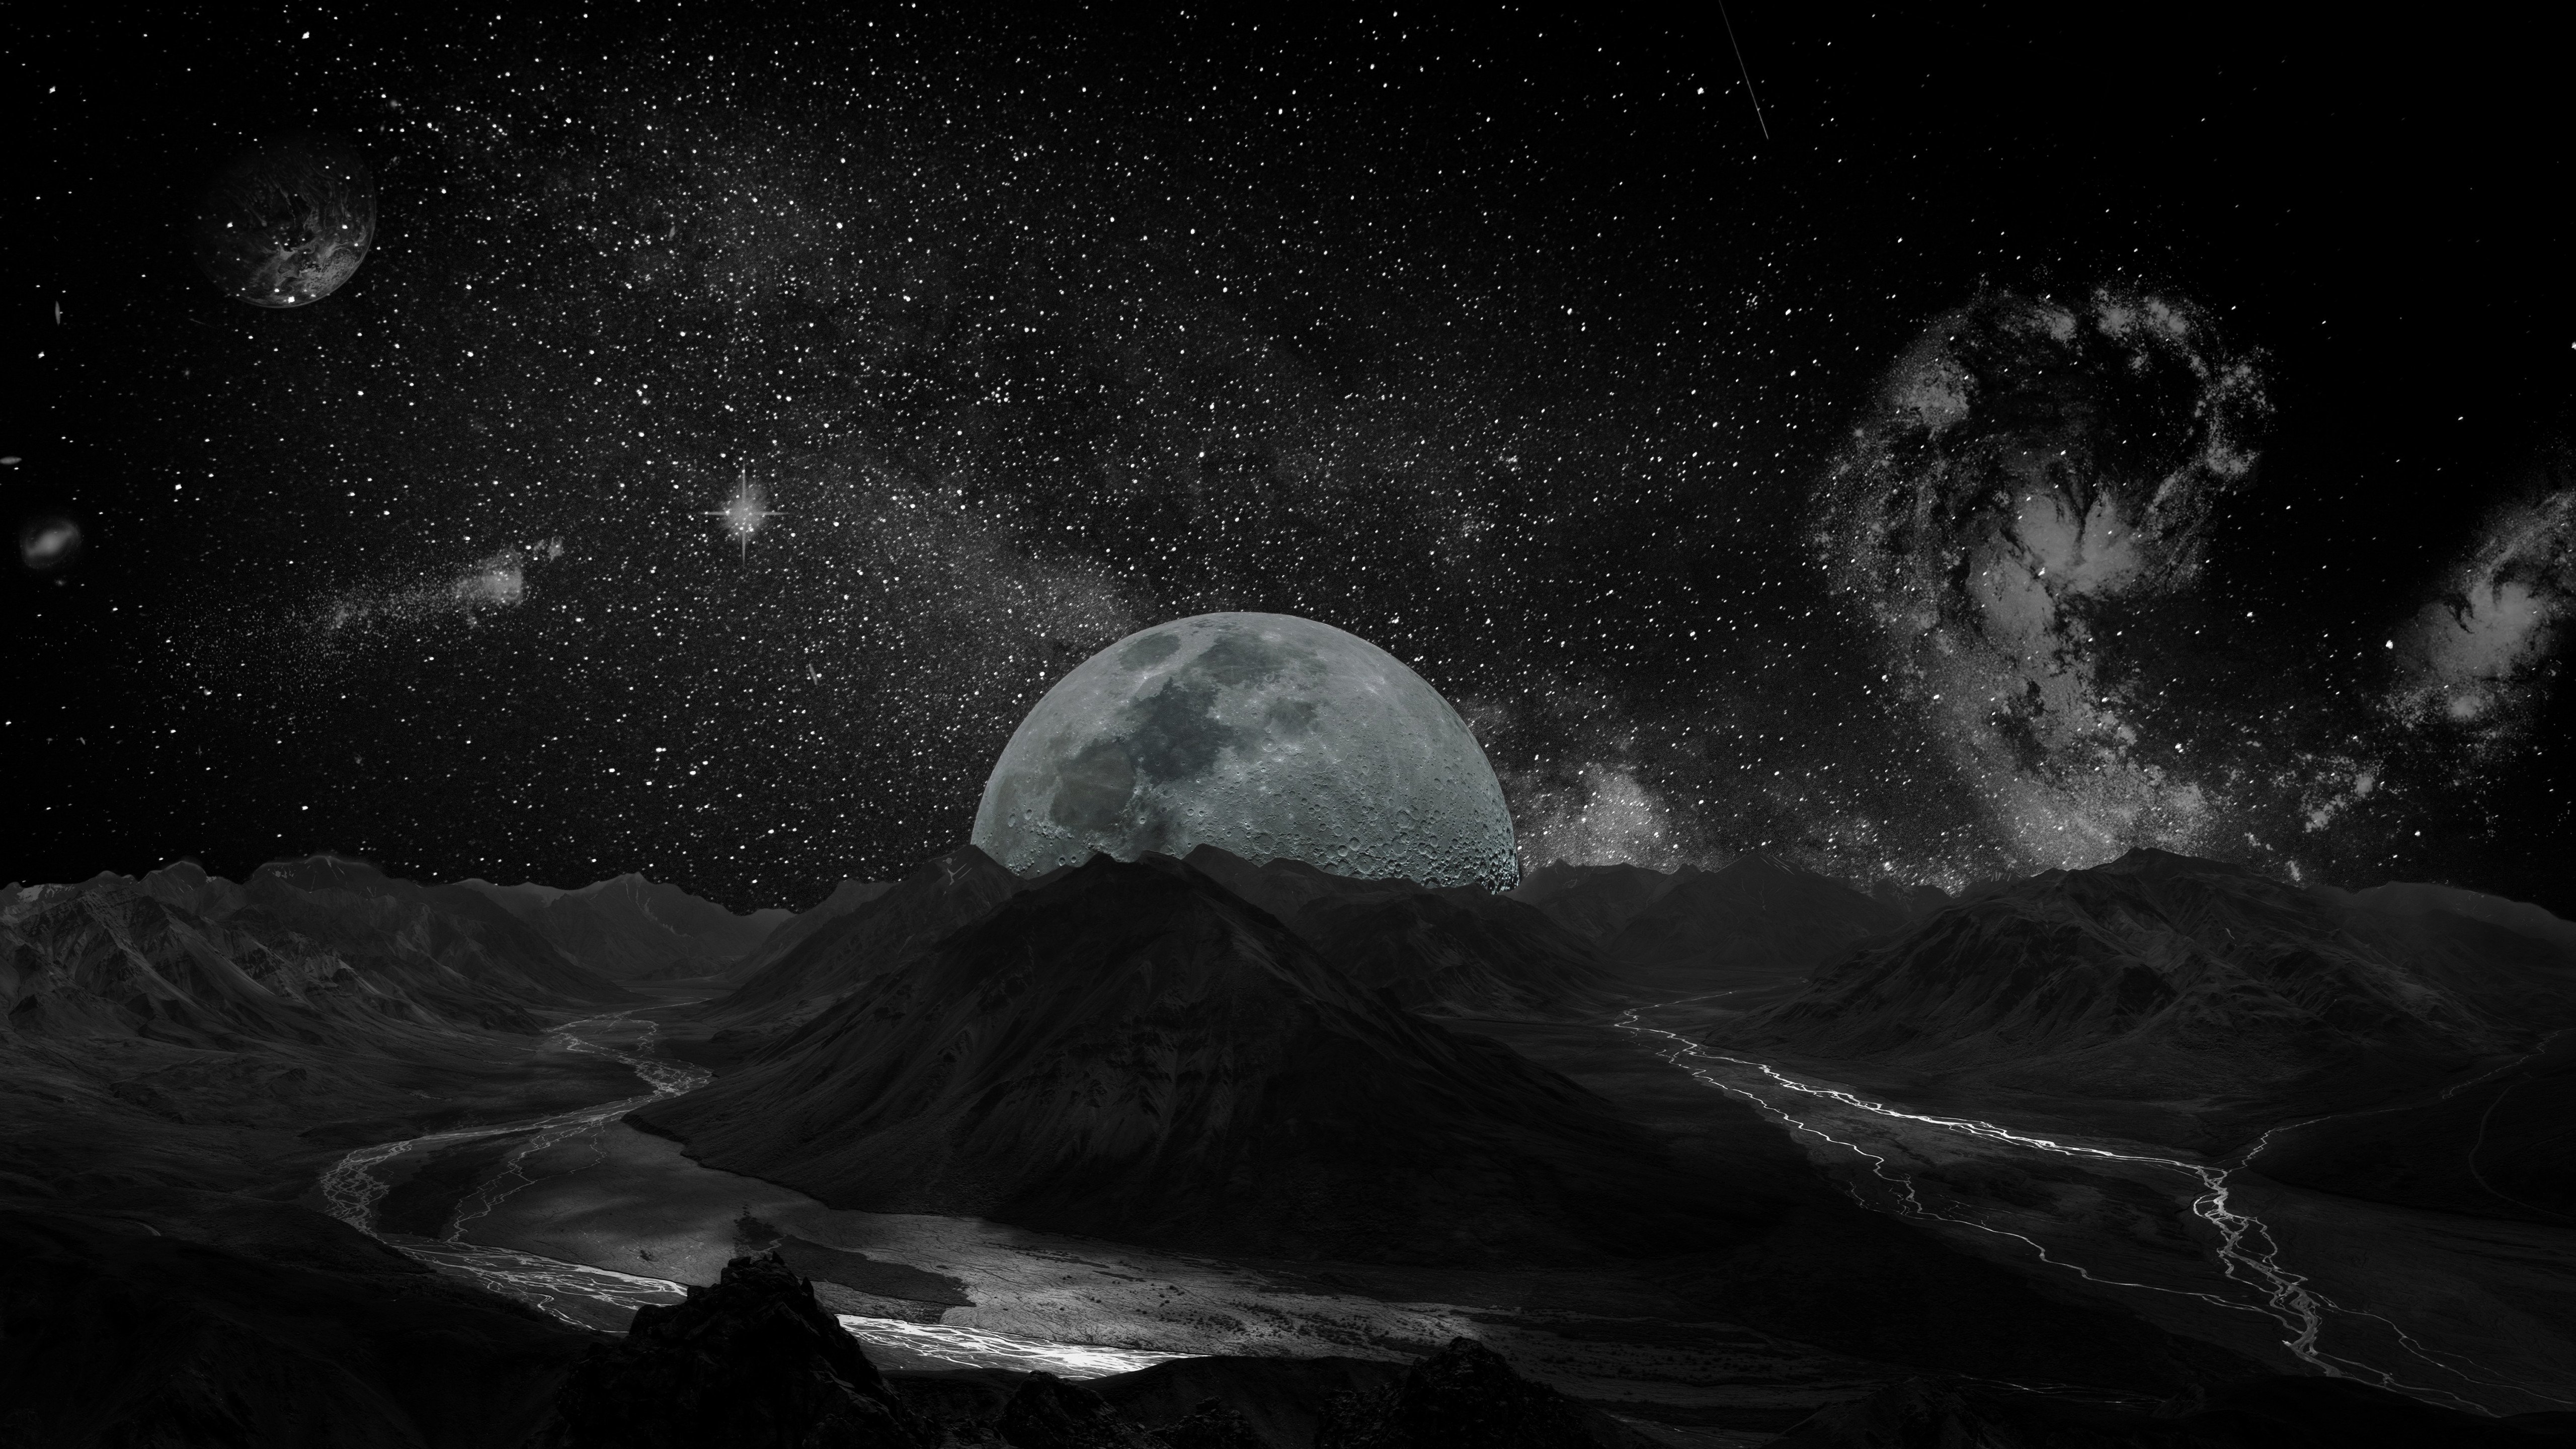 Fondos de pantalla Paisaje luna vista desde planeta